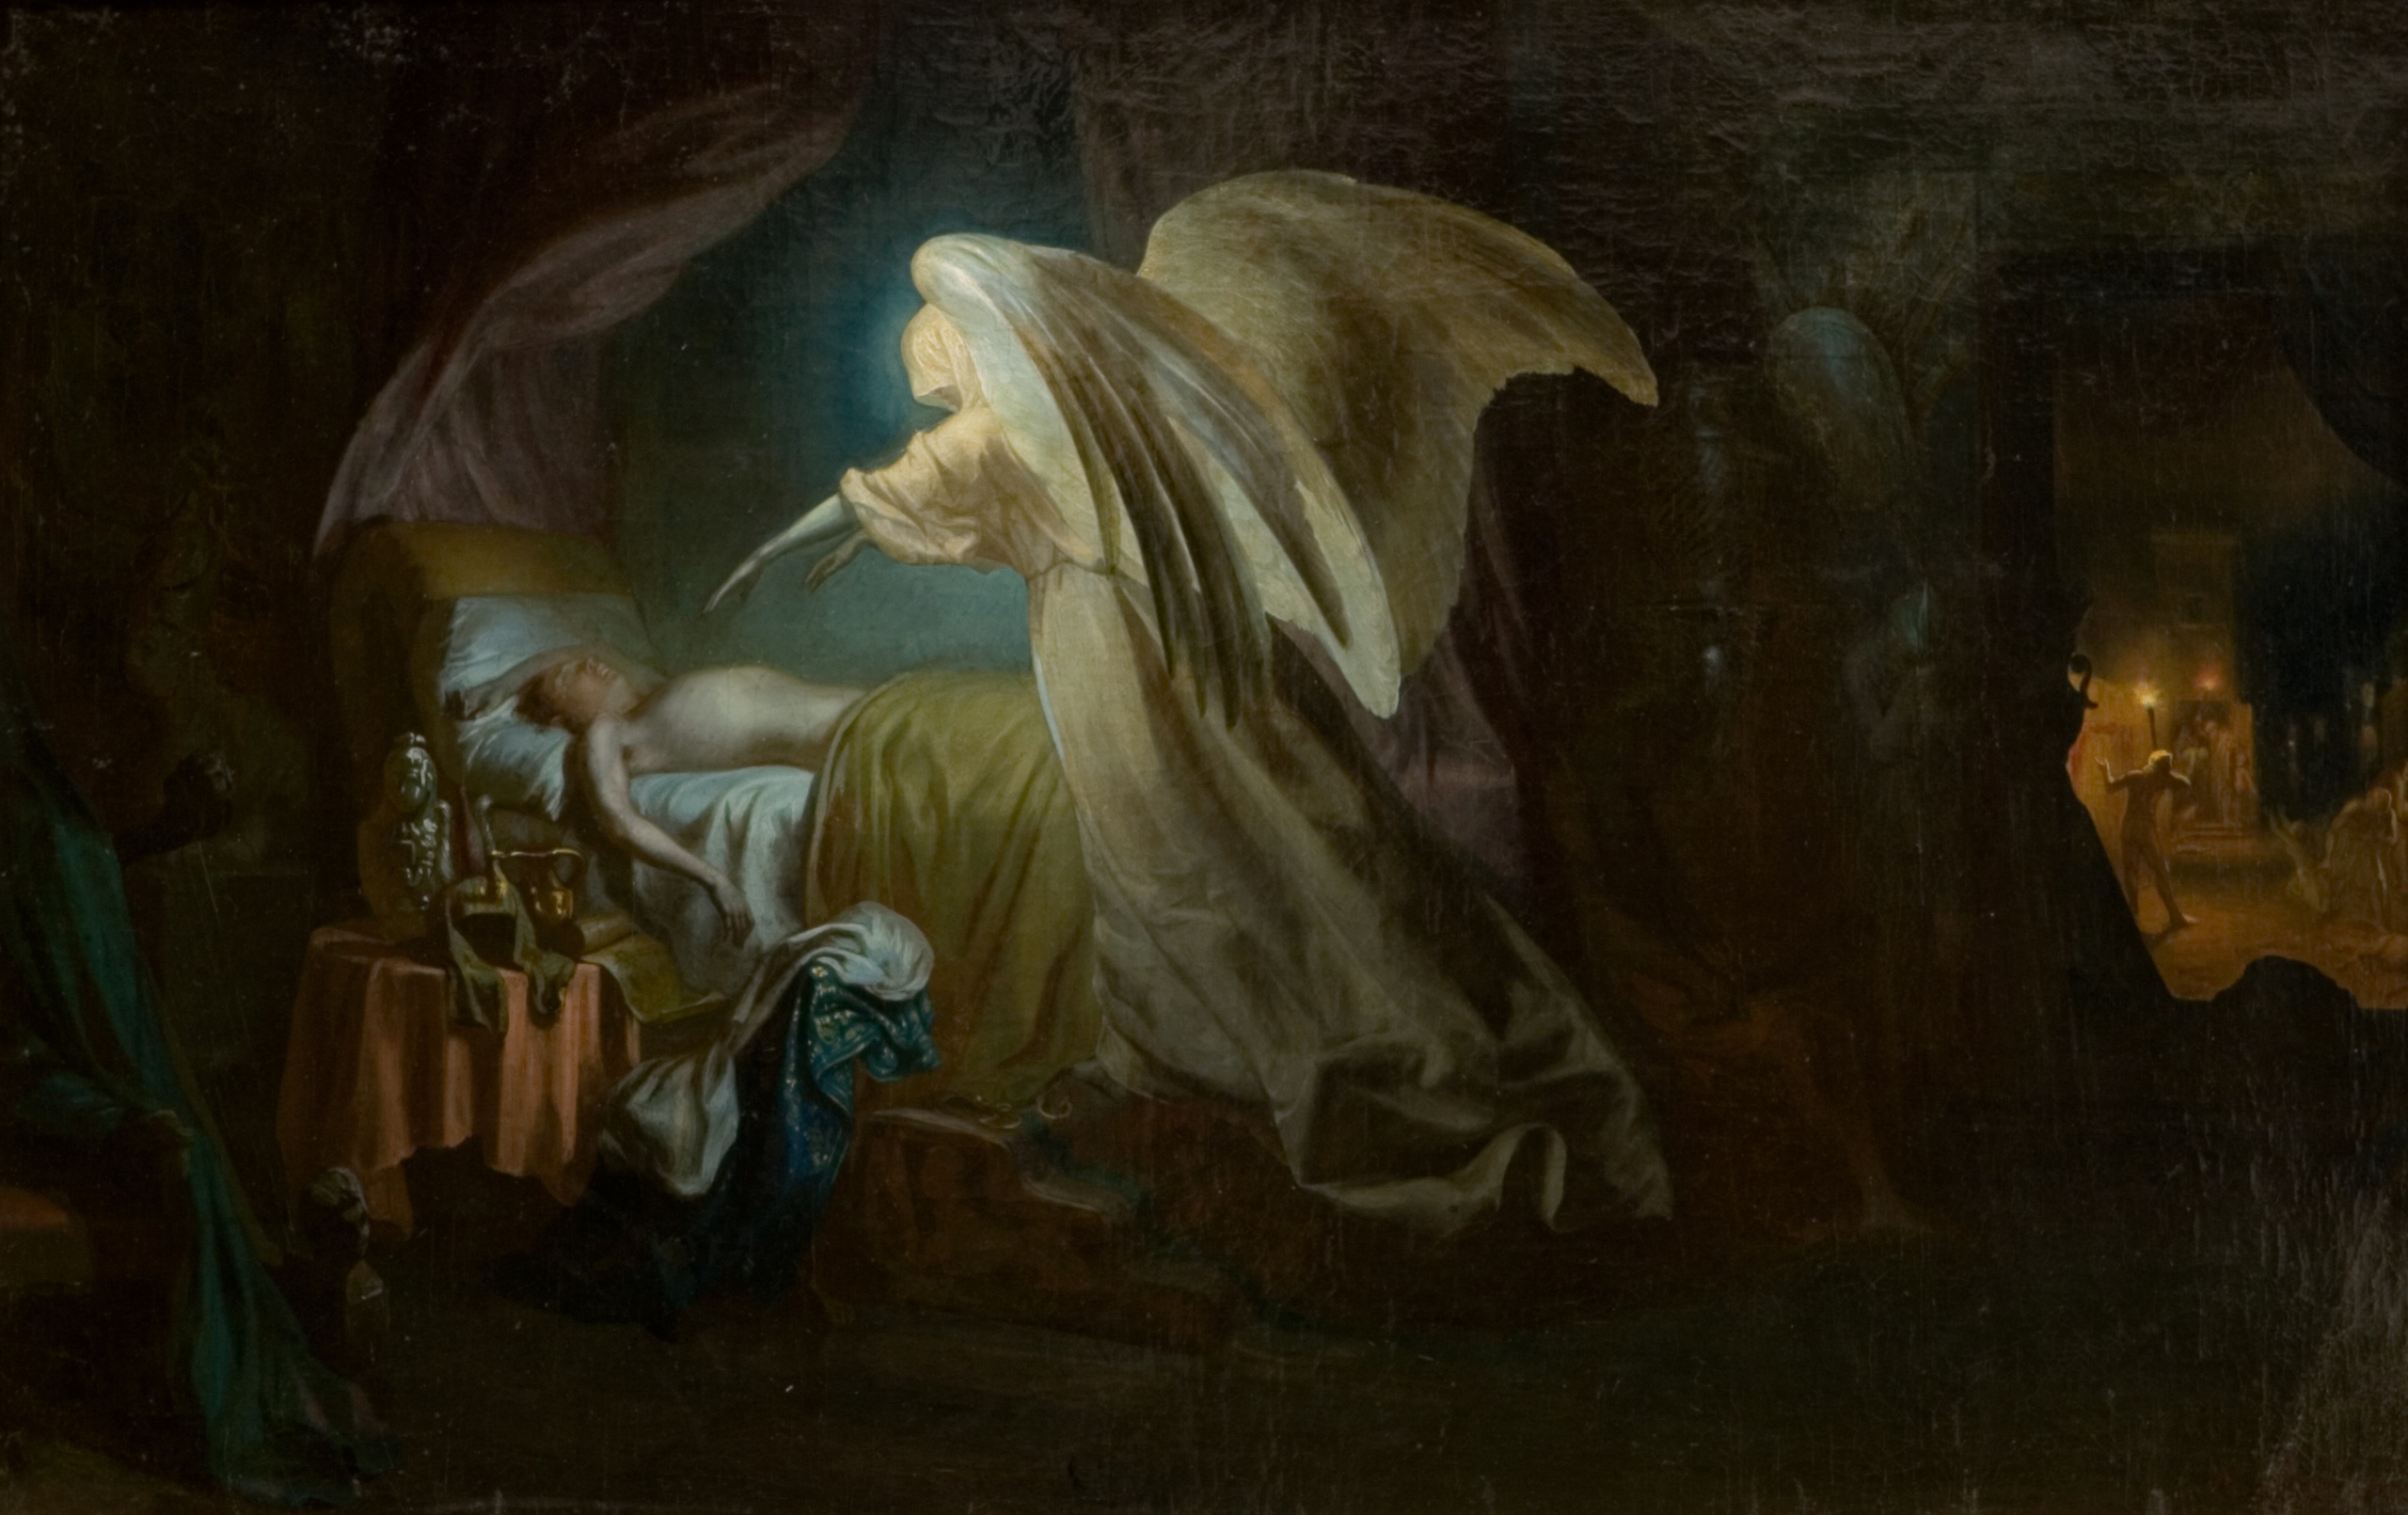 이집트 주민을 학살하는 죽음의 천사(Angel of Death Killing the Inhabitants of Egypt) by Ilya Repin - 1865 - 67 cm x 104.5 cm 